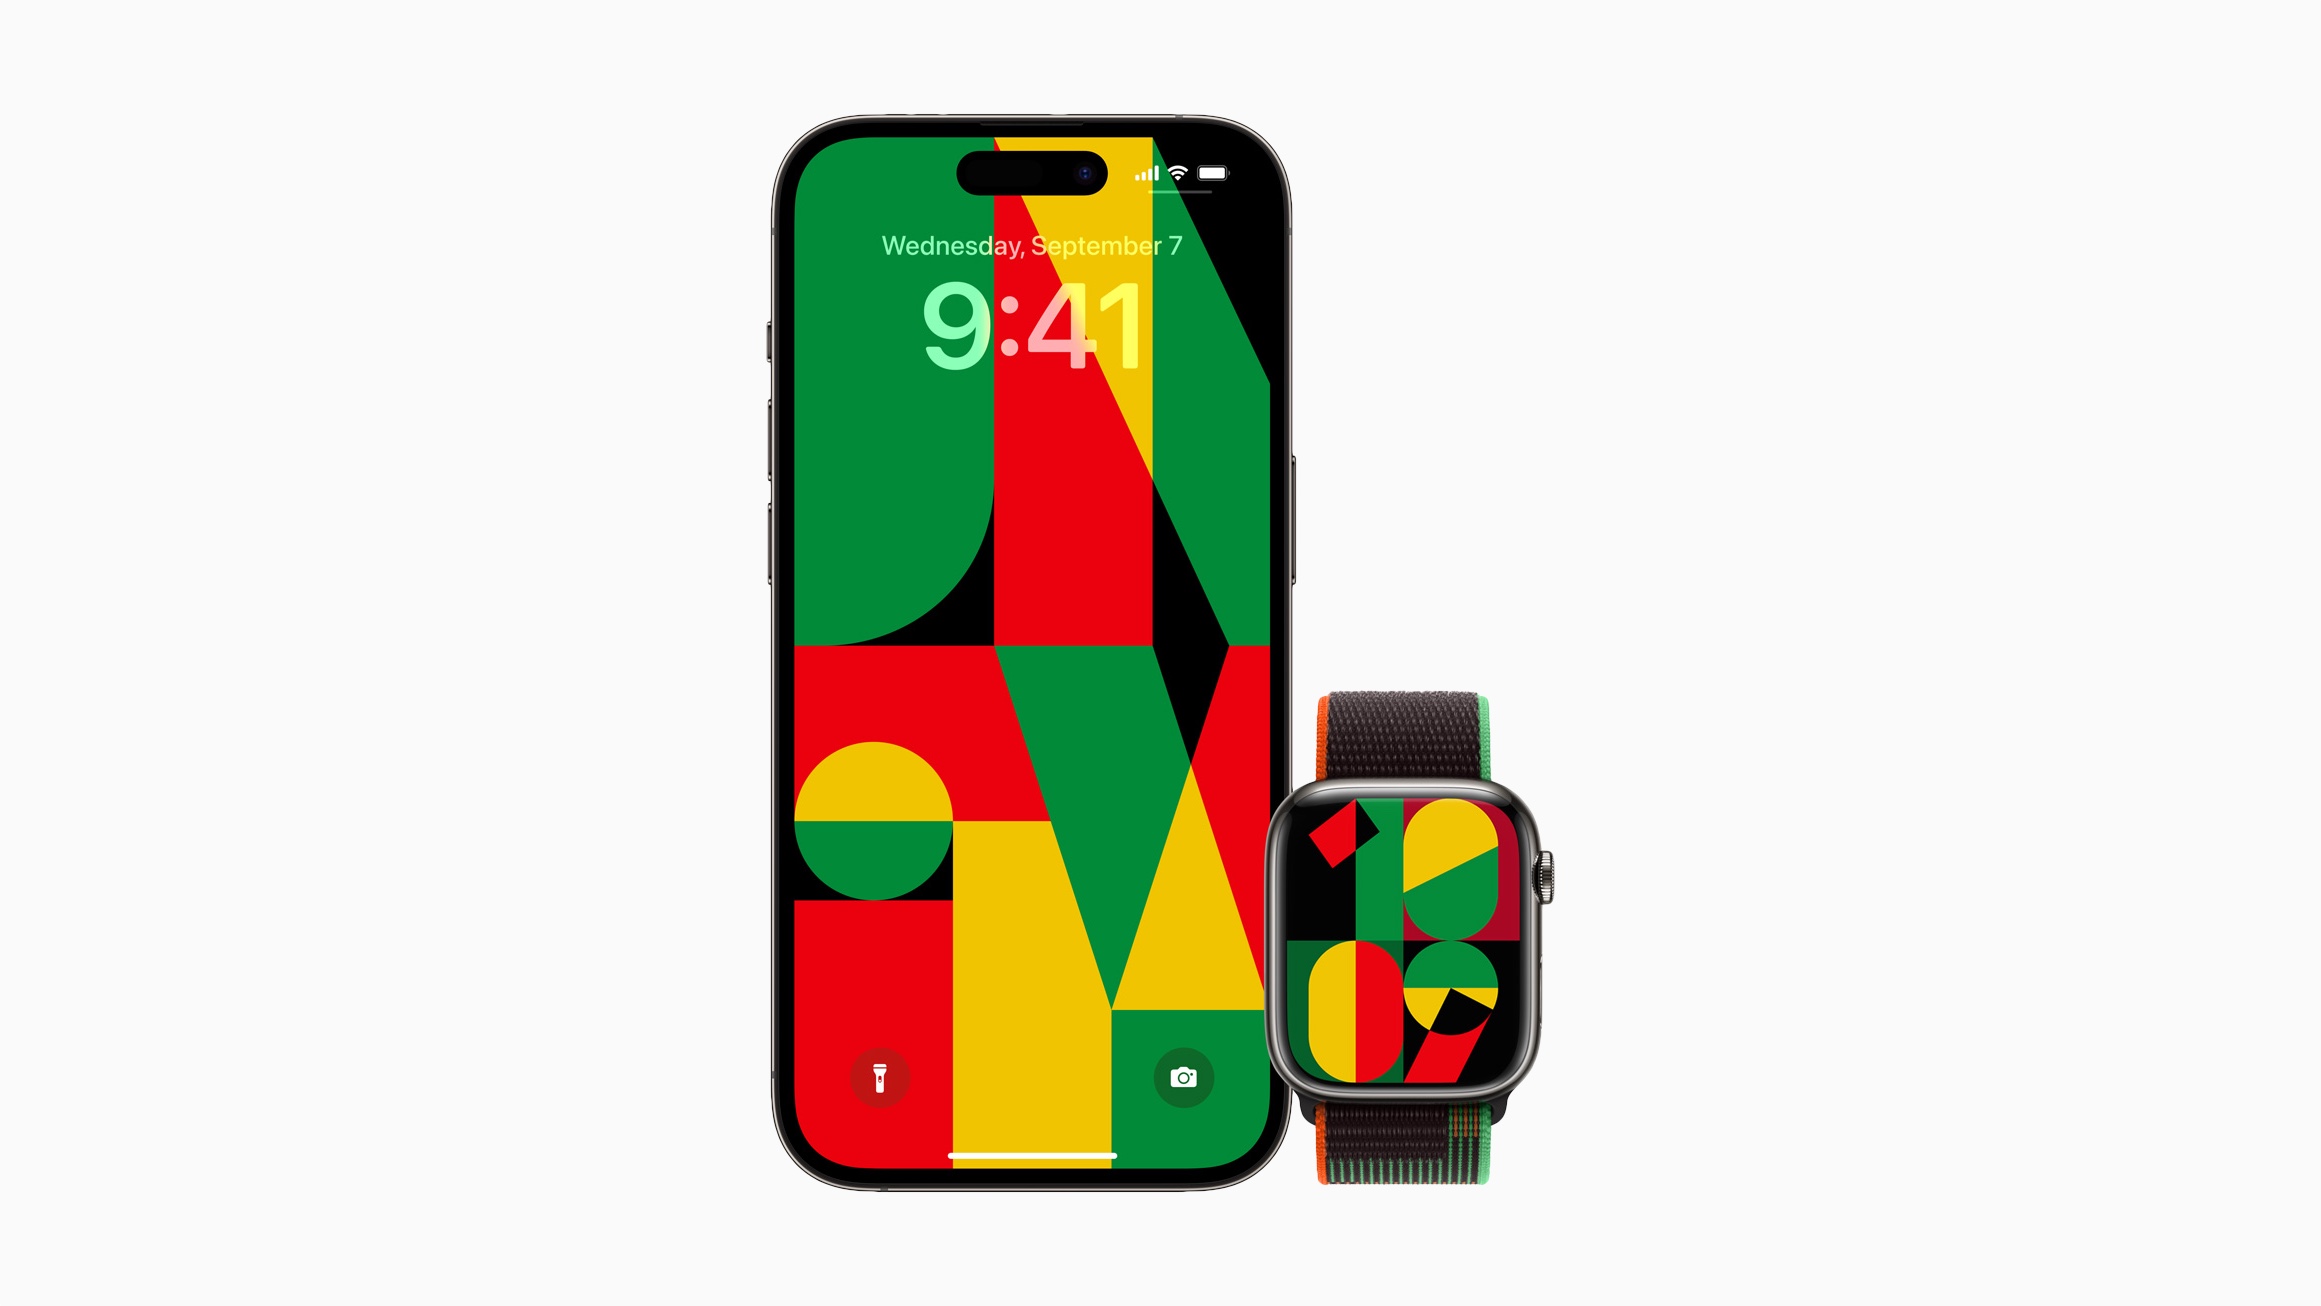 Lingkaran olahraga Apple Watch Black Unity, tampilan jam, dan wallpaper iPhone terinspirasi oleh proses kreatif mosaik, semangat komunitas kulit hitam, dan kekuatan persatuan.